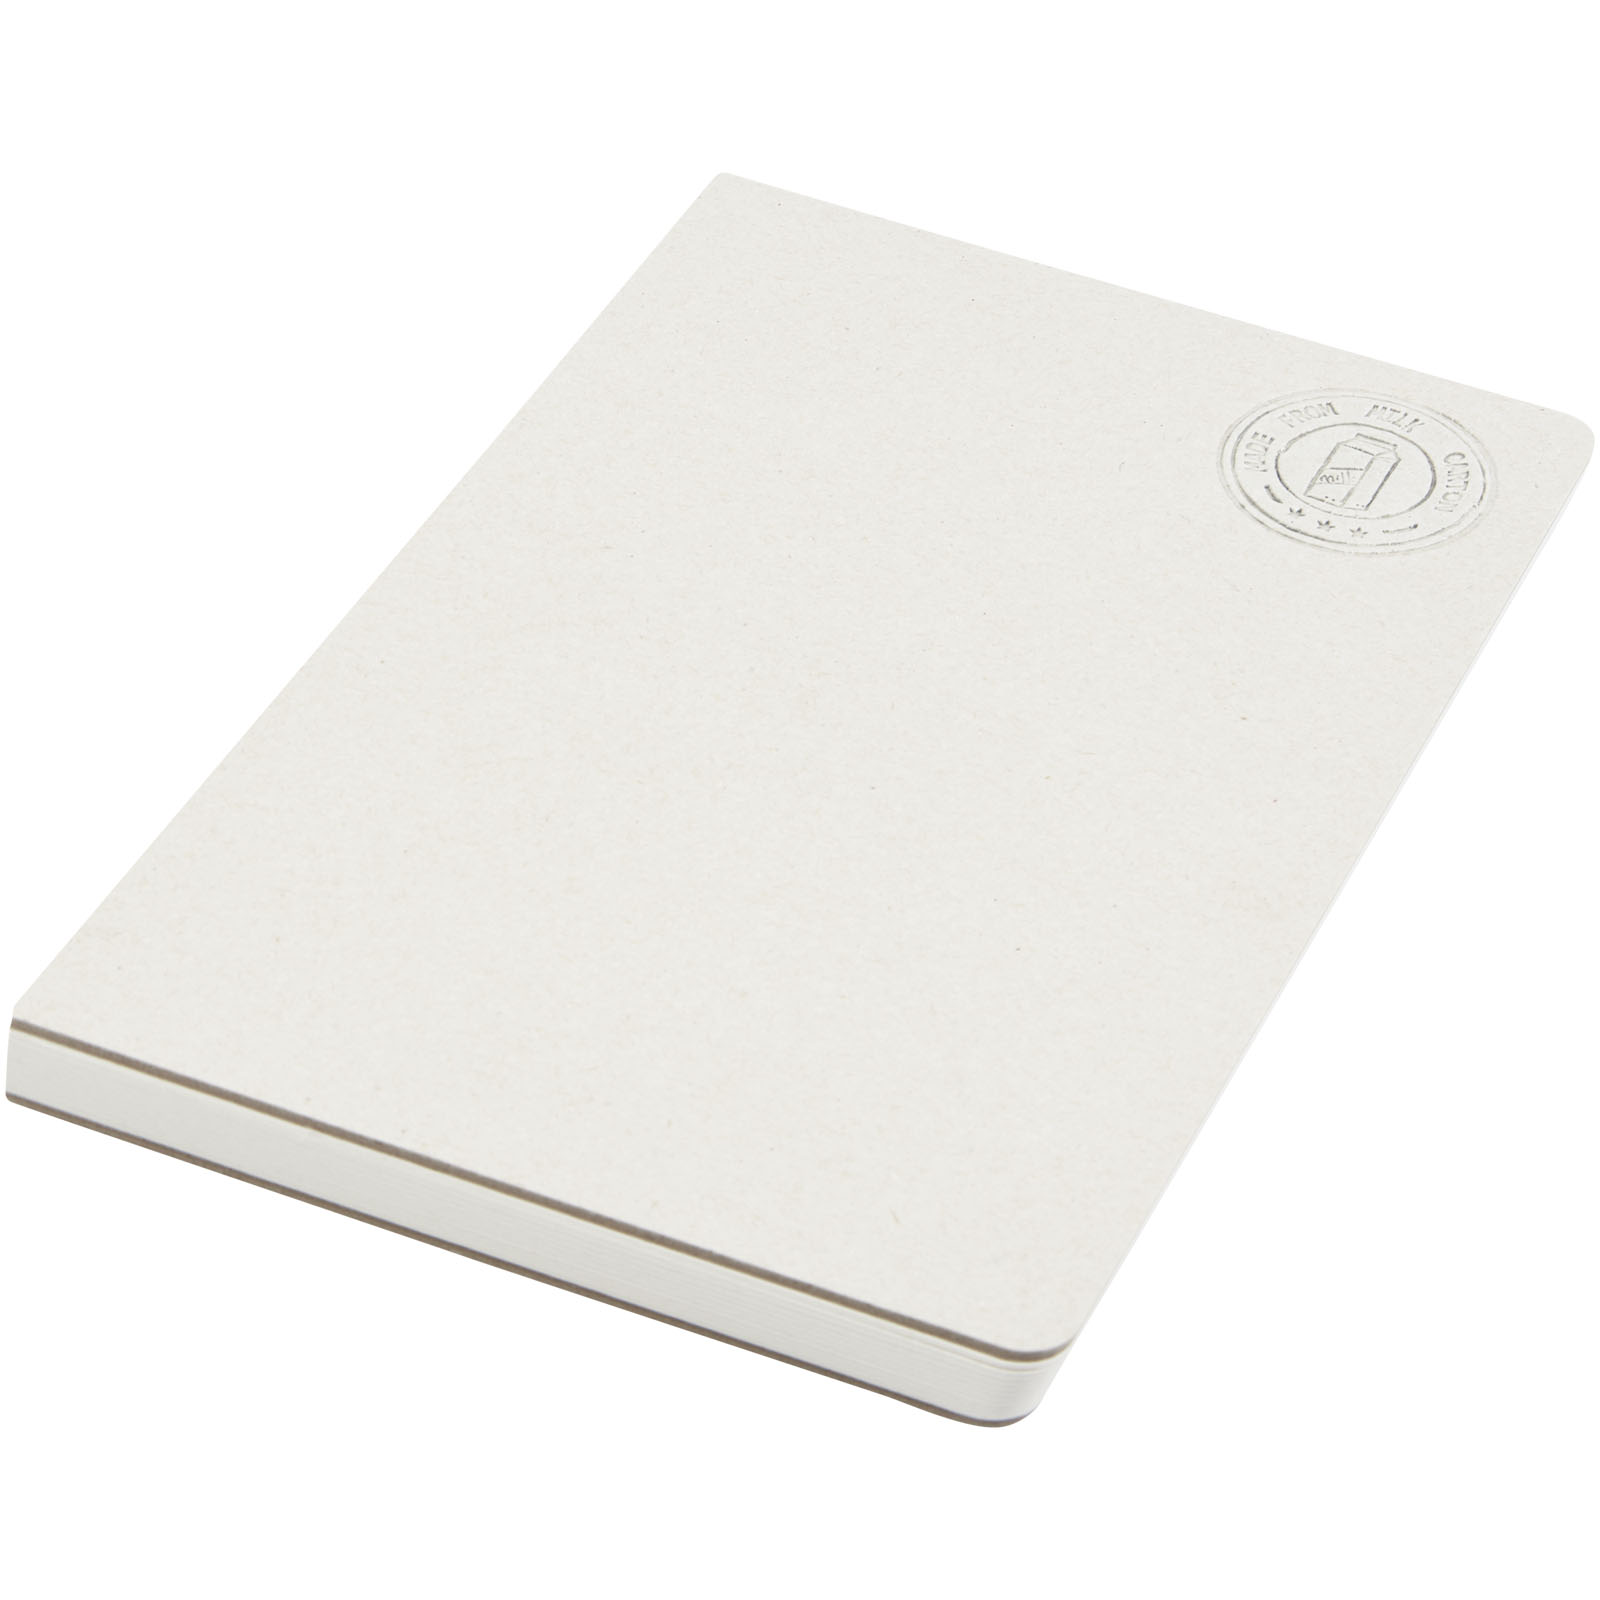 Linkovaný zápisník bez hřbetu DAIRY vyrobený z krabic od mléka, formát A5 - off white